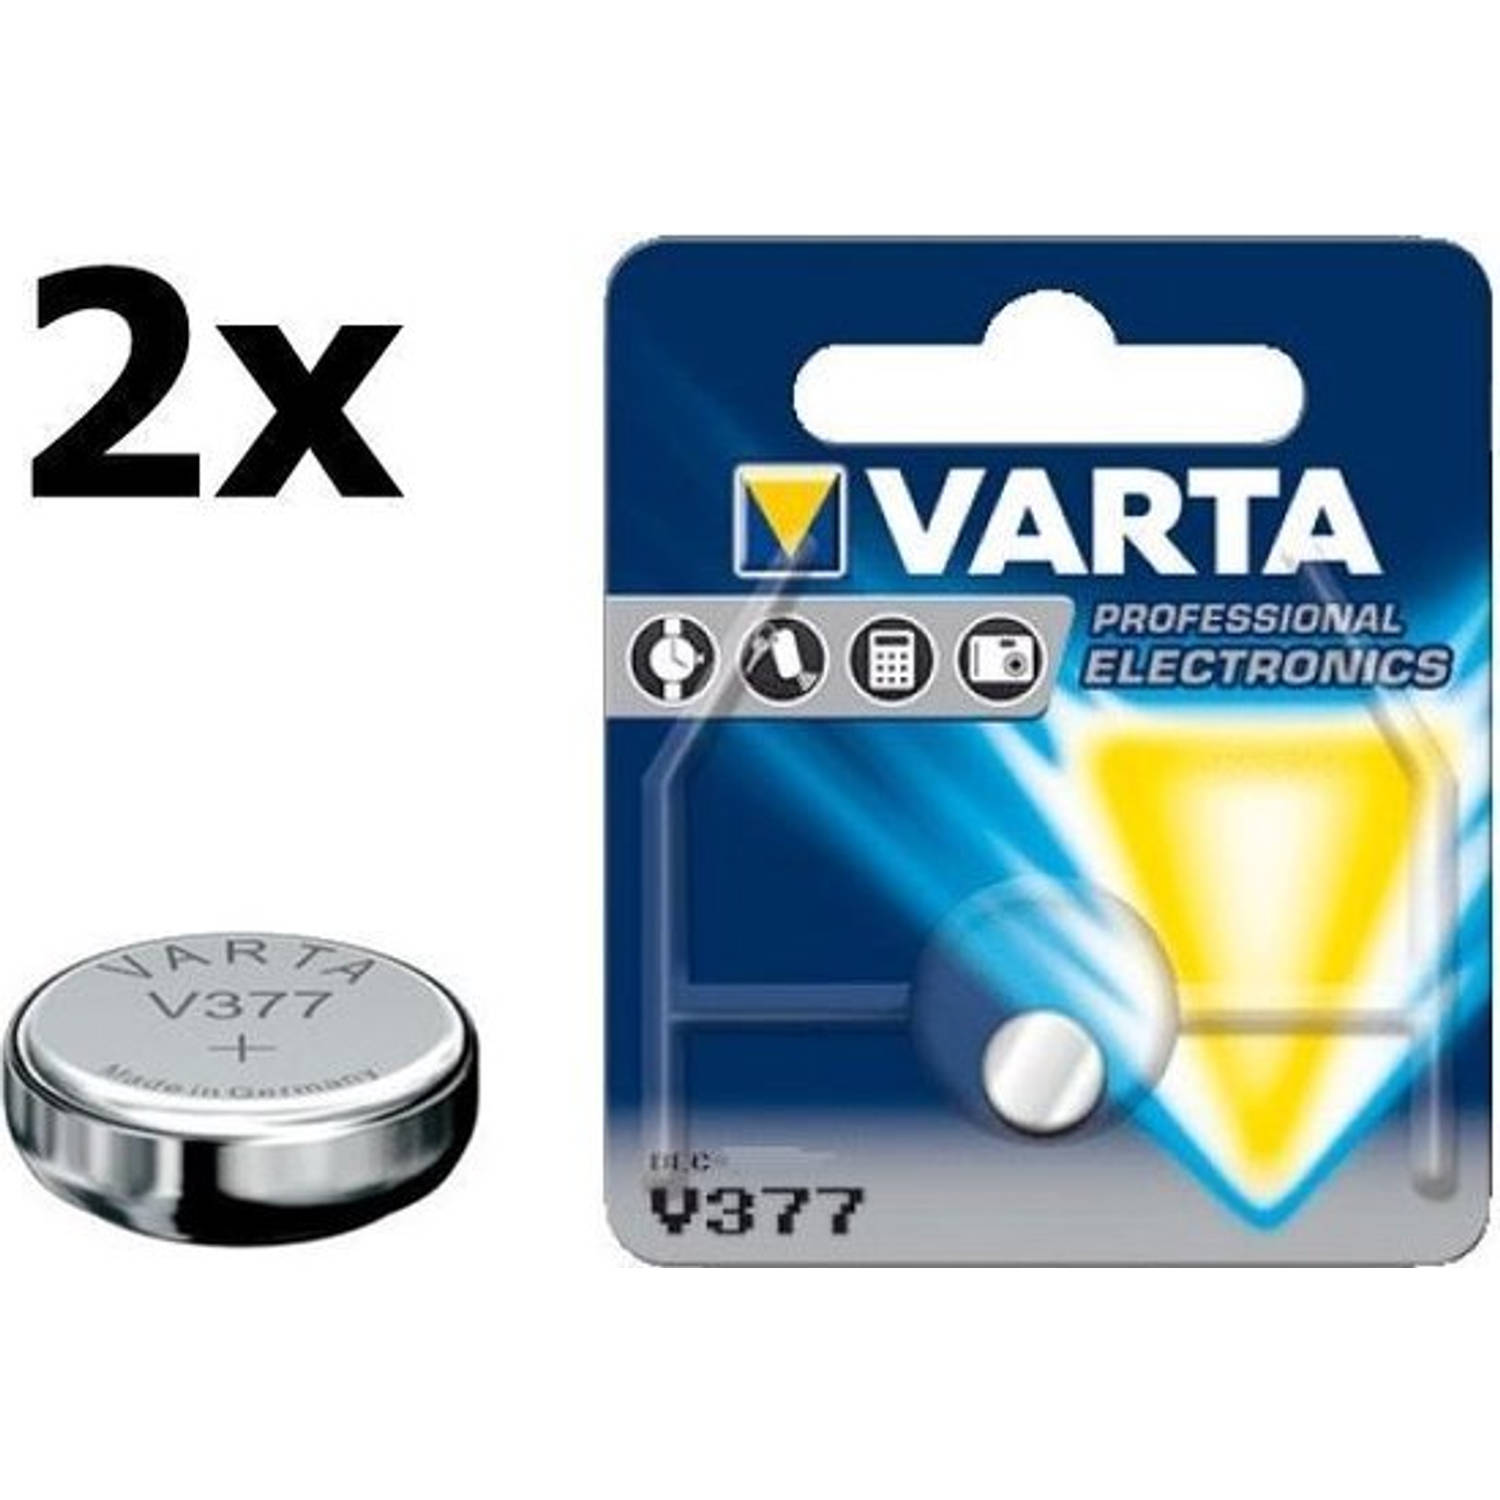 2 Stuks - Varta V377 27mAh 1.55V knoopcel batterij